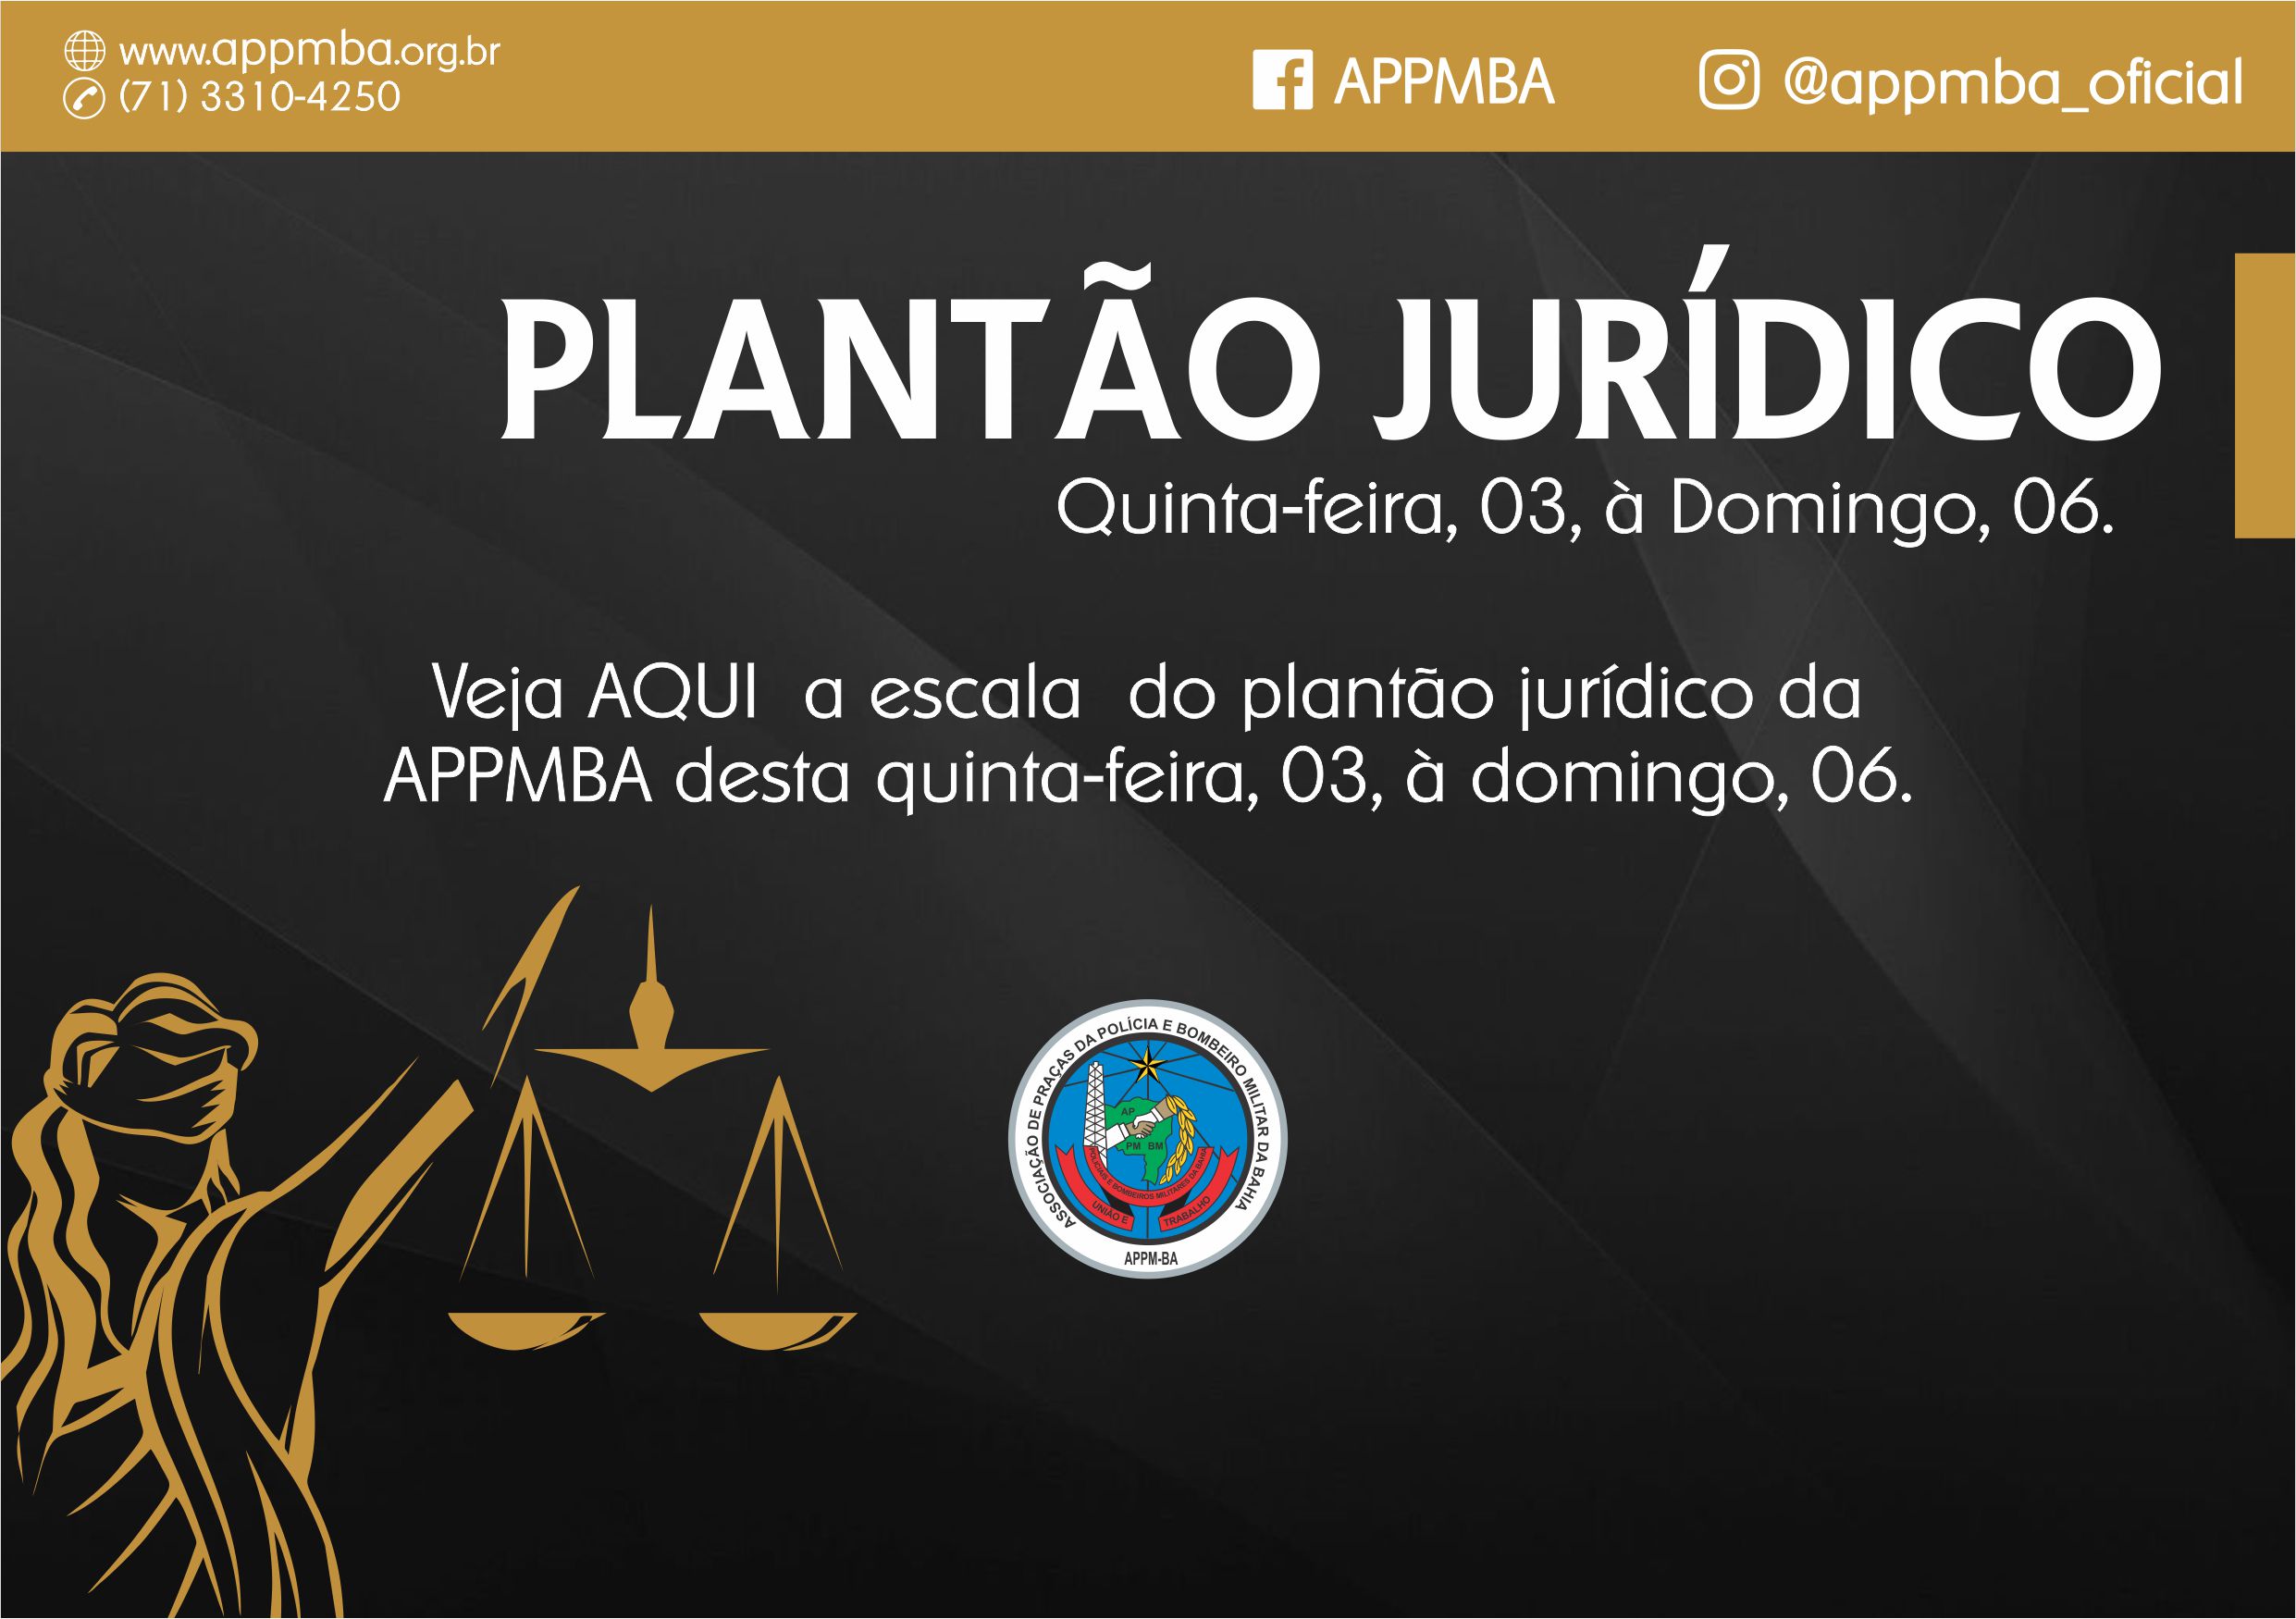 Plantão Jurídico APPM-BA, dias 3 à 6/5/2018